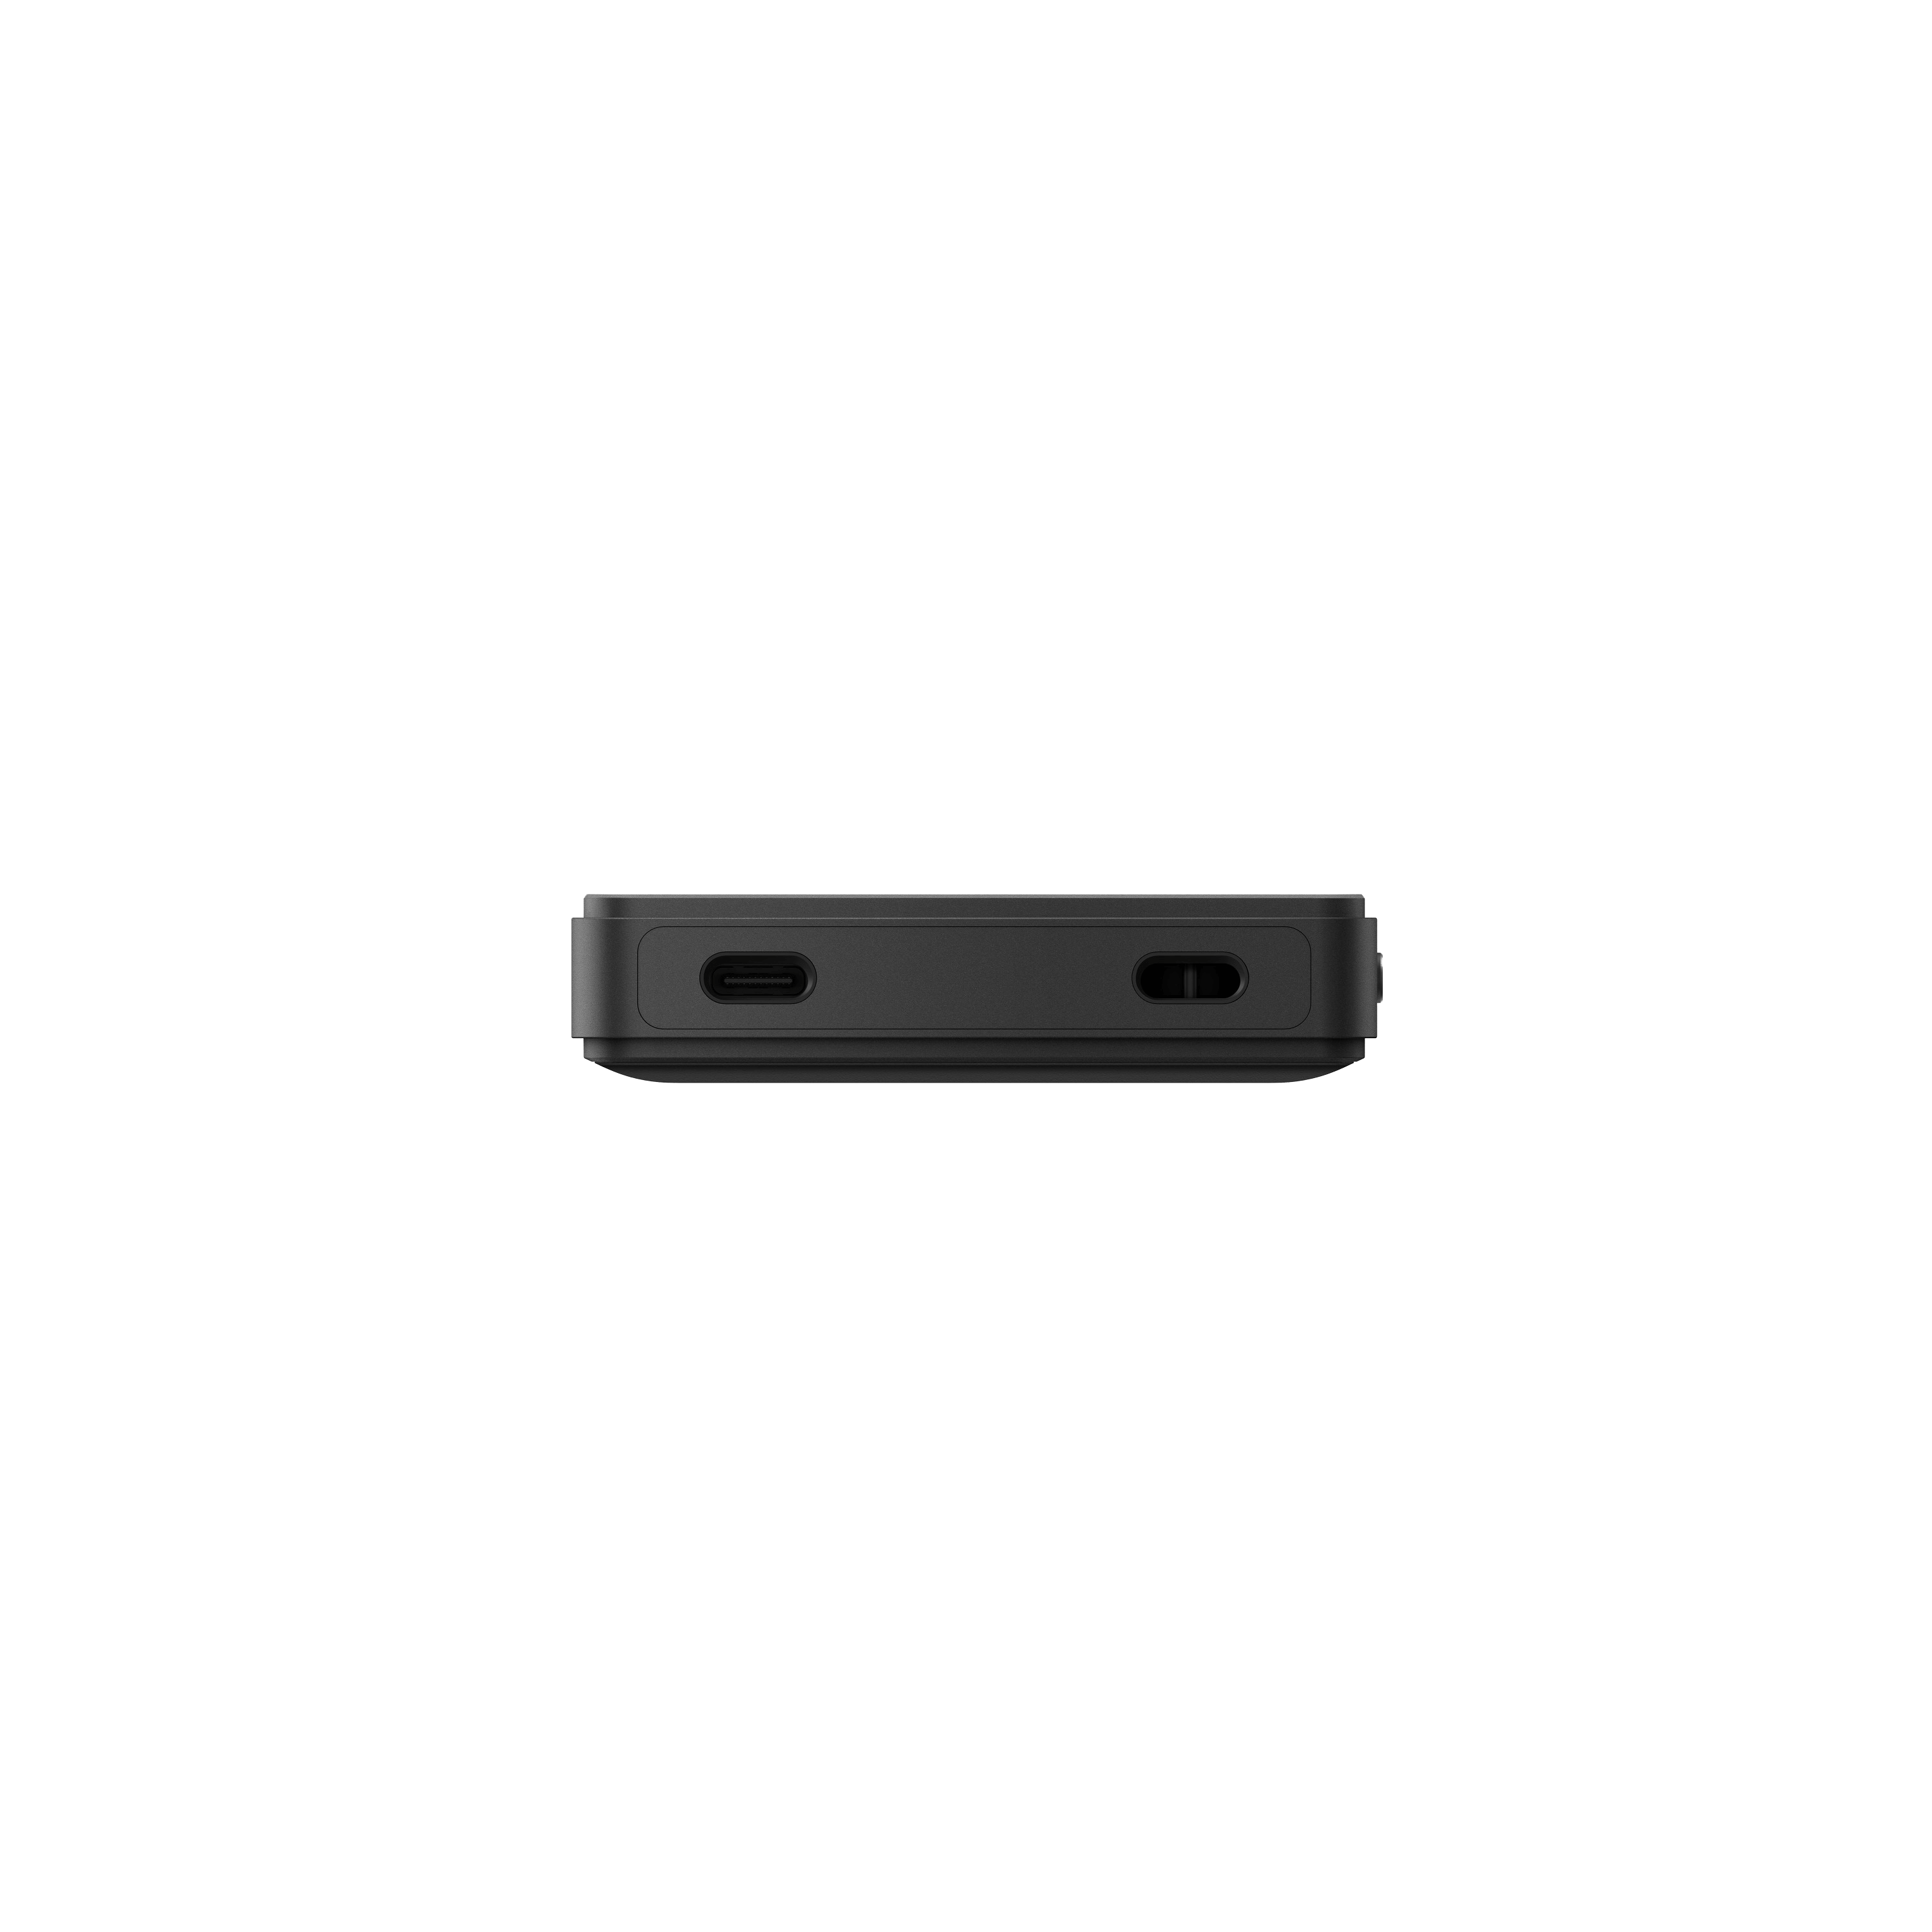 Sony|NW-ZX707|Máy nghe nhạc walkman chất lượng cao